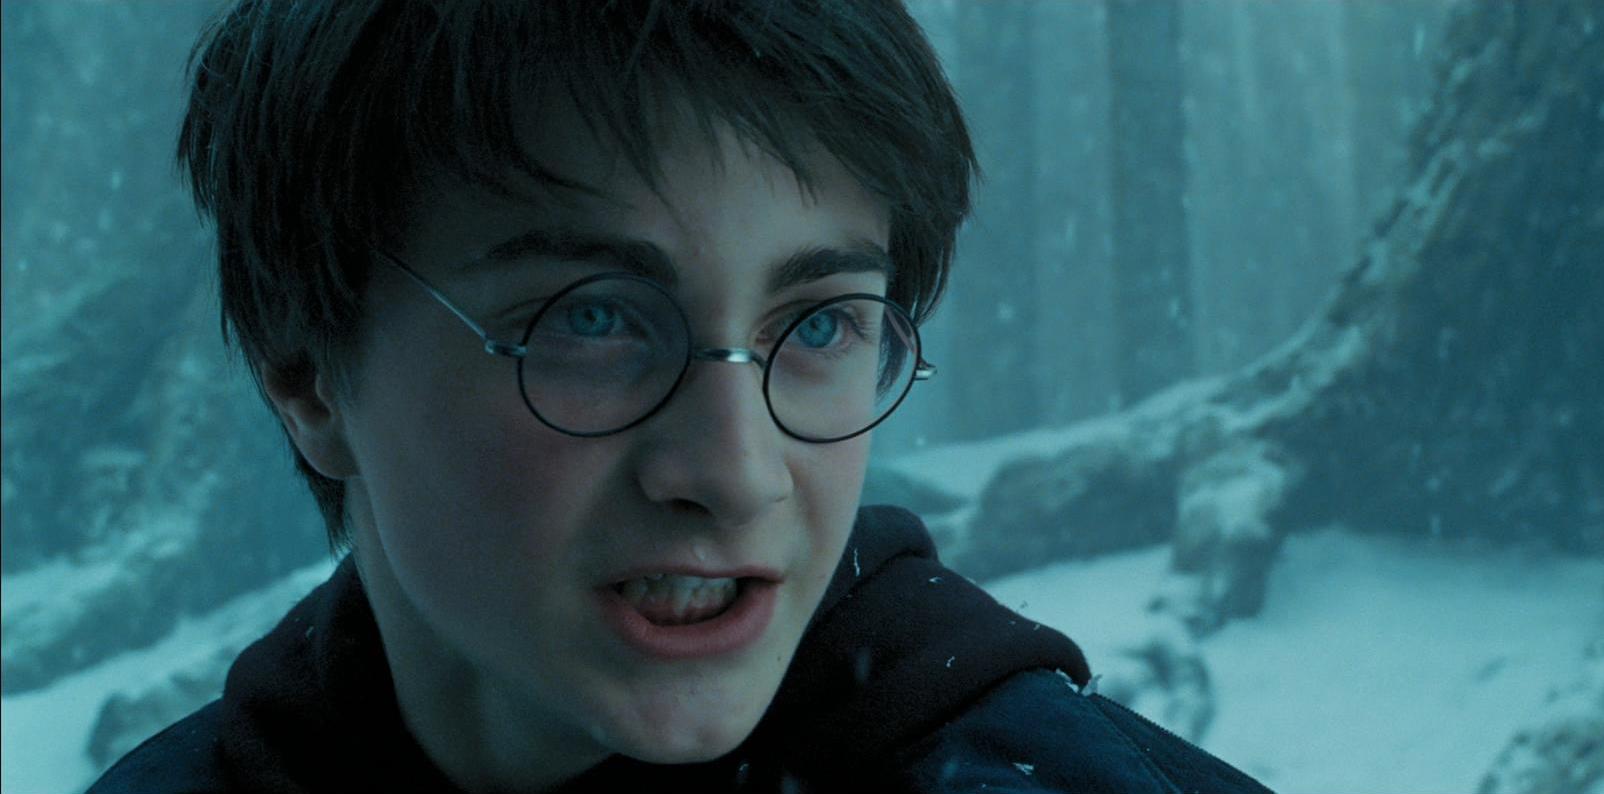 E se Harry Potter fosse o vilão?